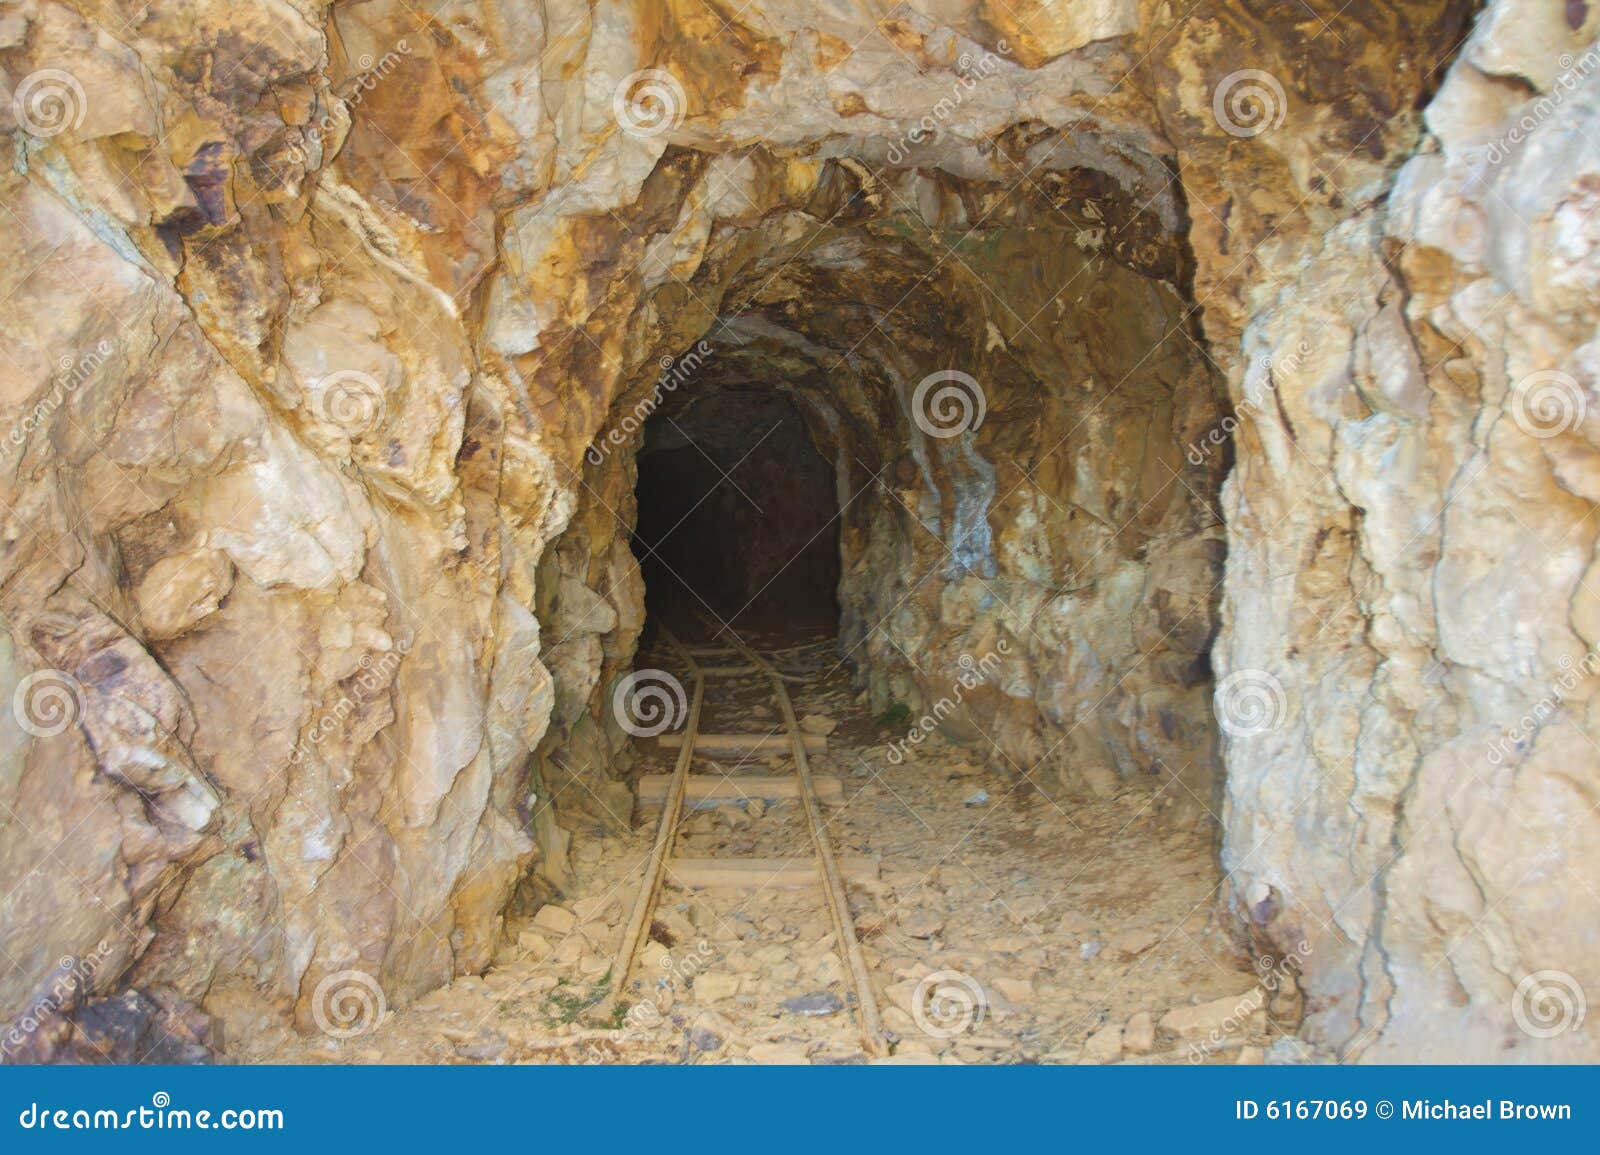 abandoned gold mine